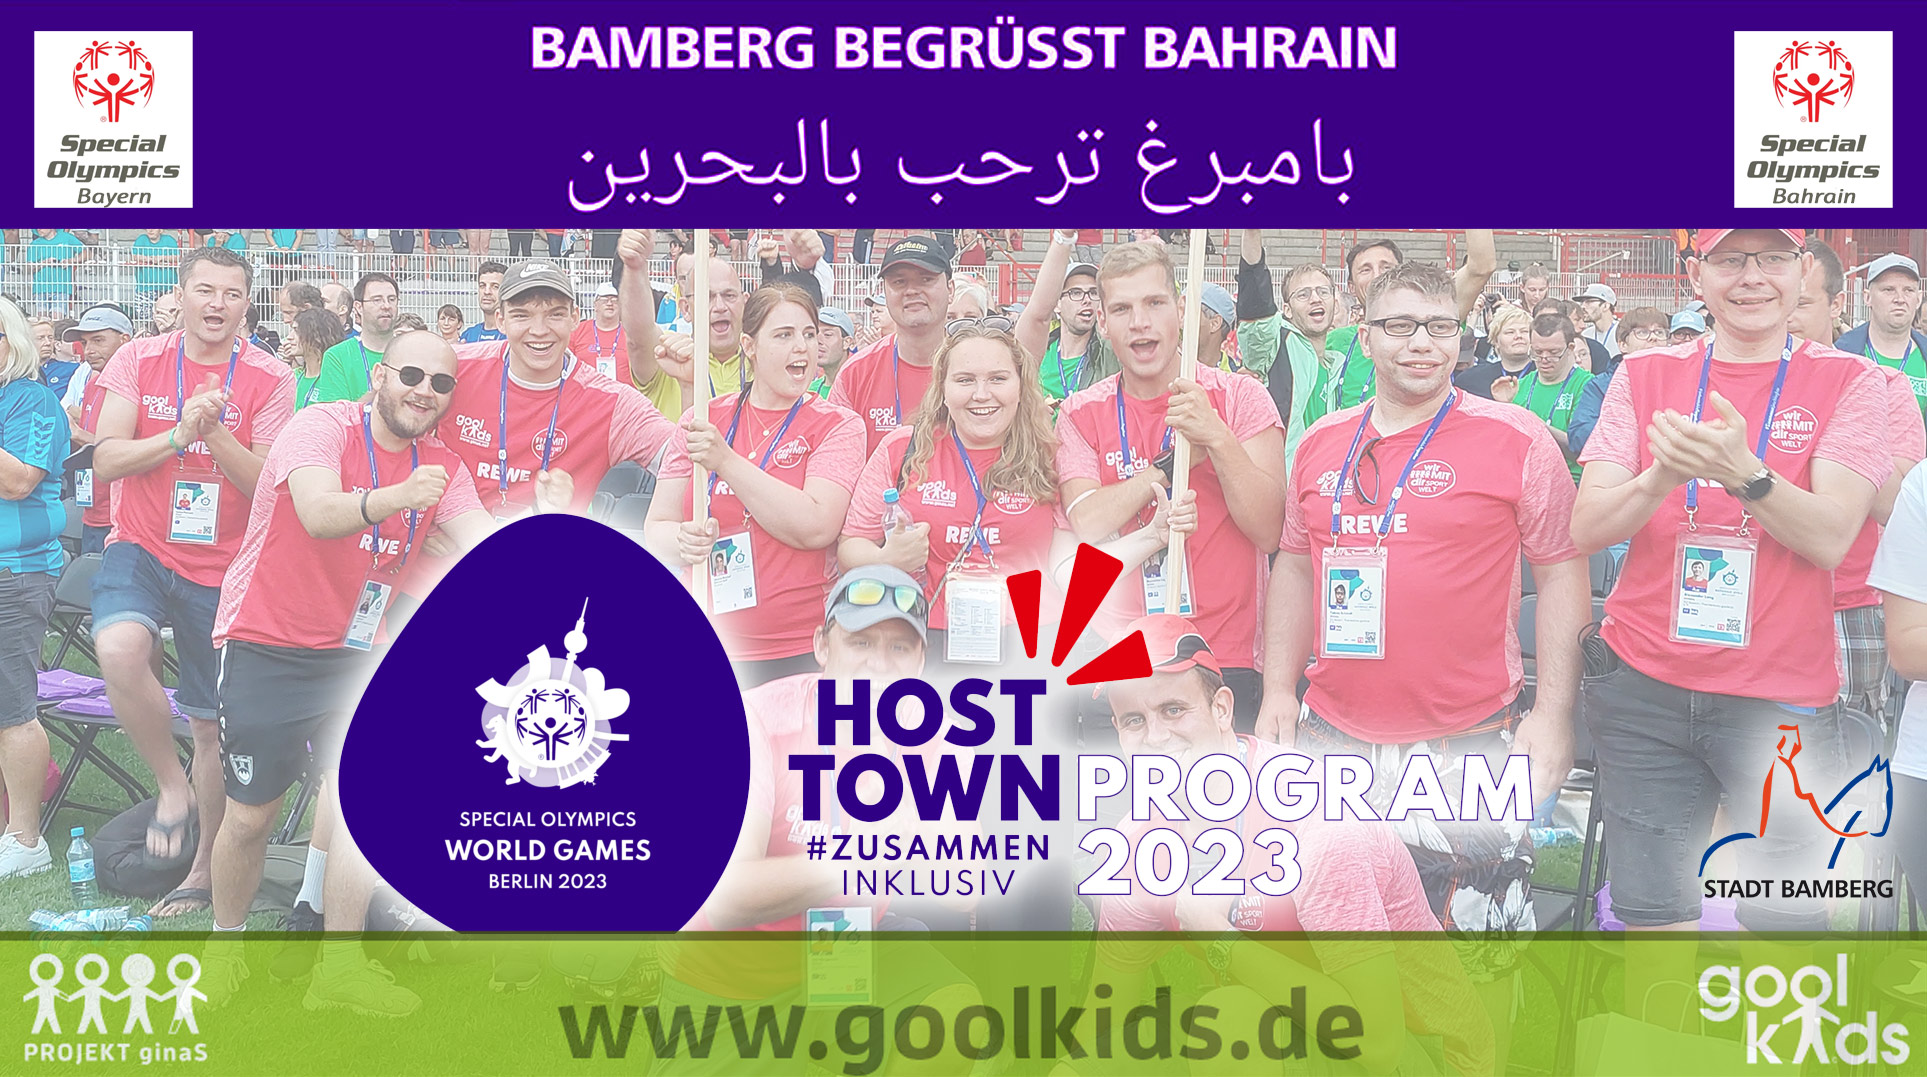 Bamberg begrüßt Bahrain